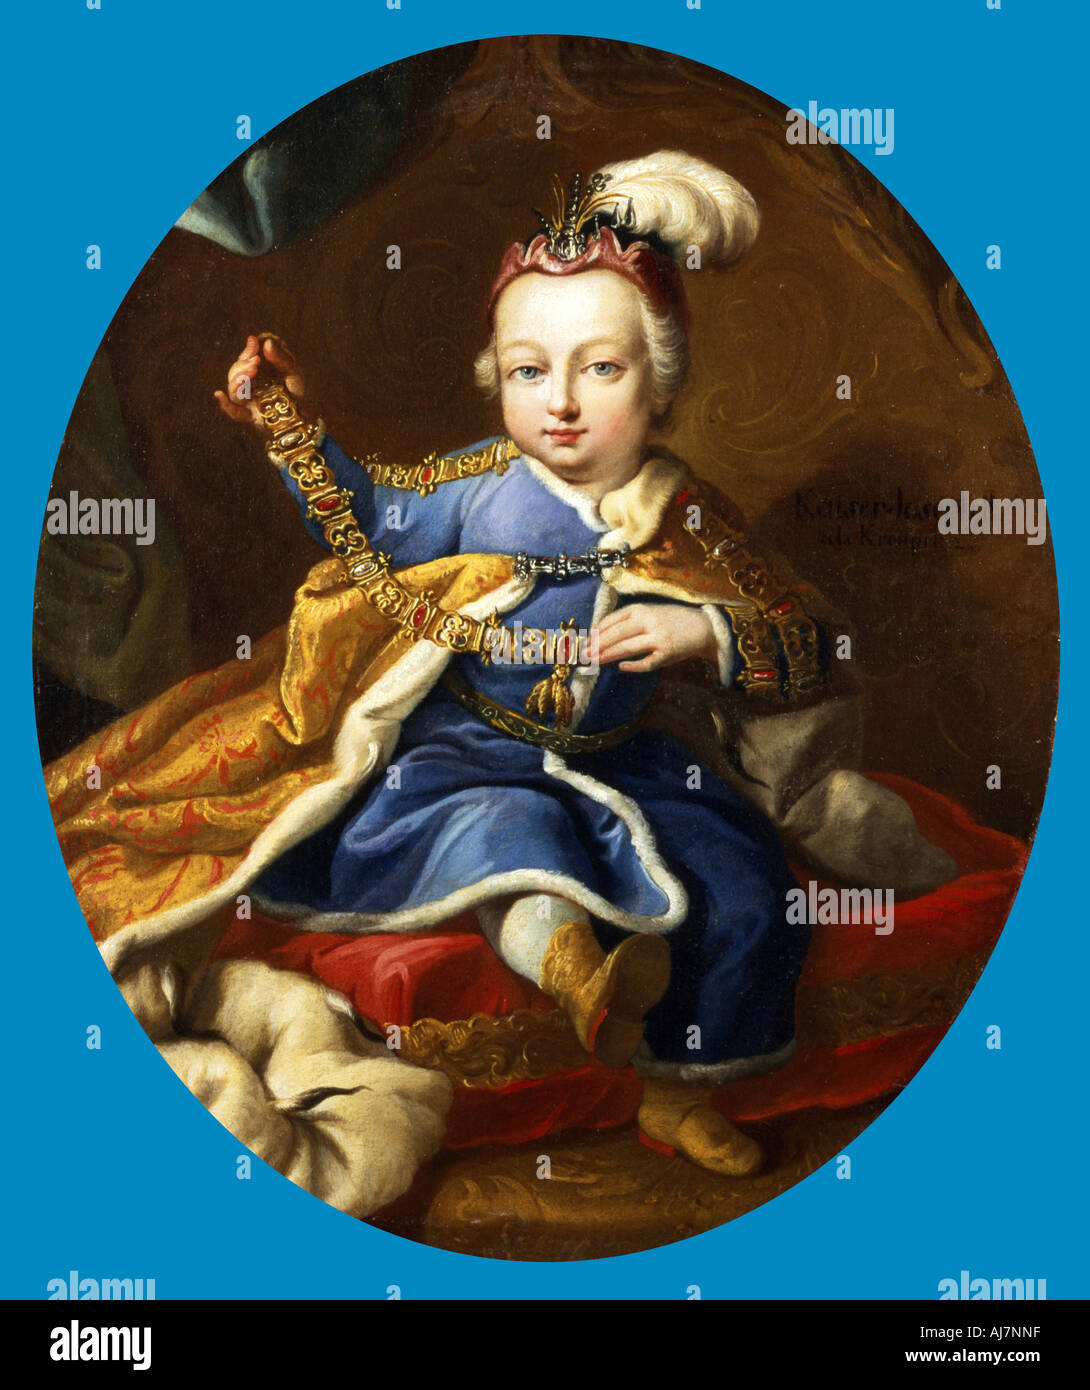 Le Prince Joseph, futur Empereur Joseph II d'Autriche en tant qu'enfant, 18e siècle. Artiste : Martin van Mytens II Banque D'Images